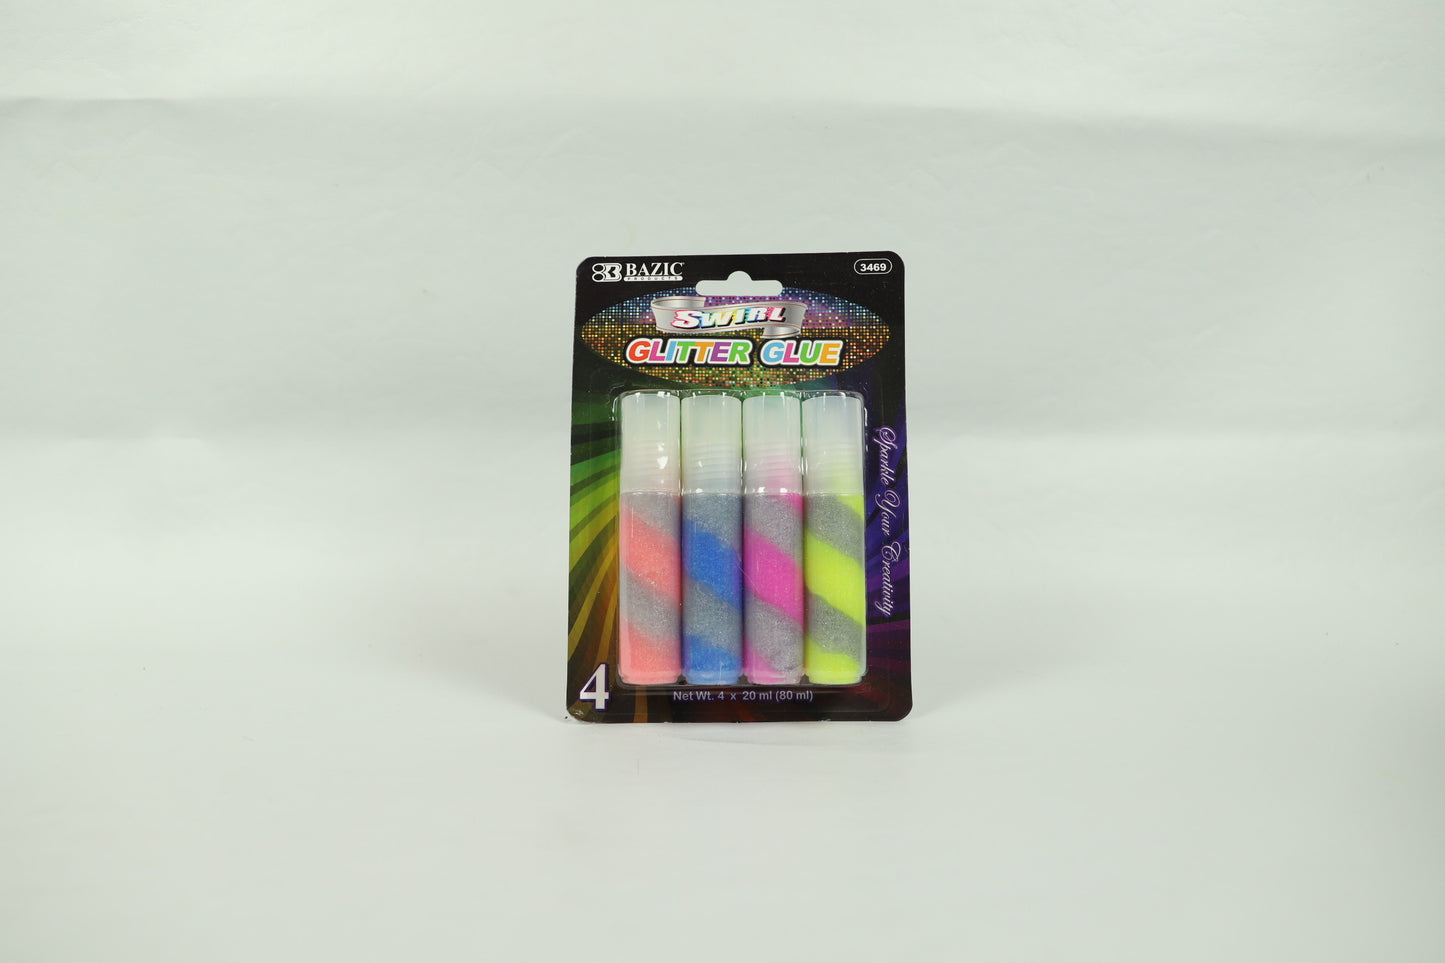 Swirl Glitter Glue - 20ml each - 4 pack